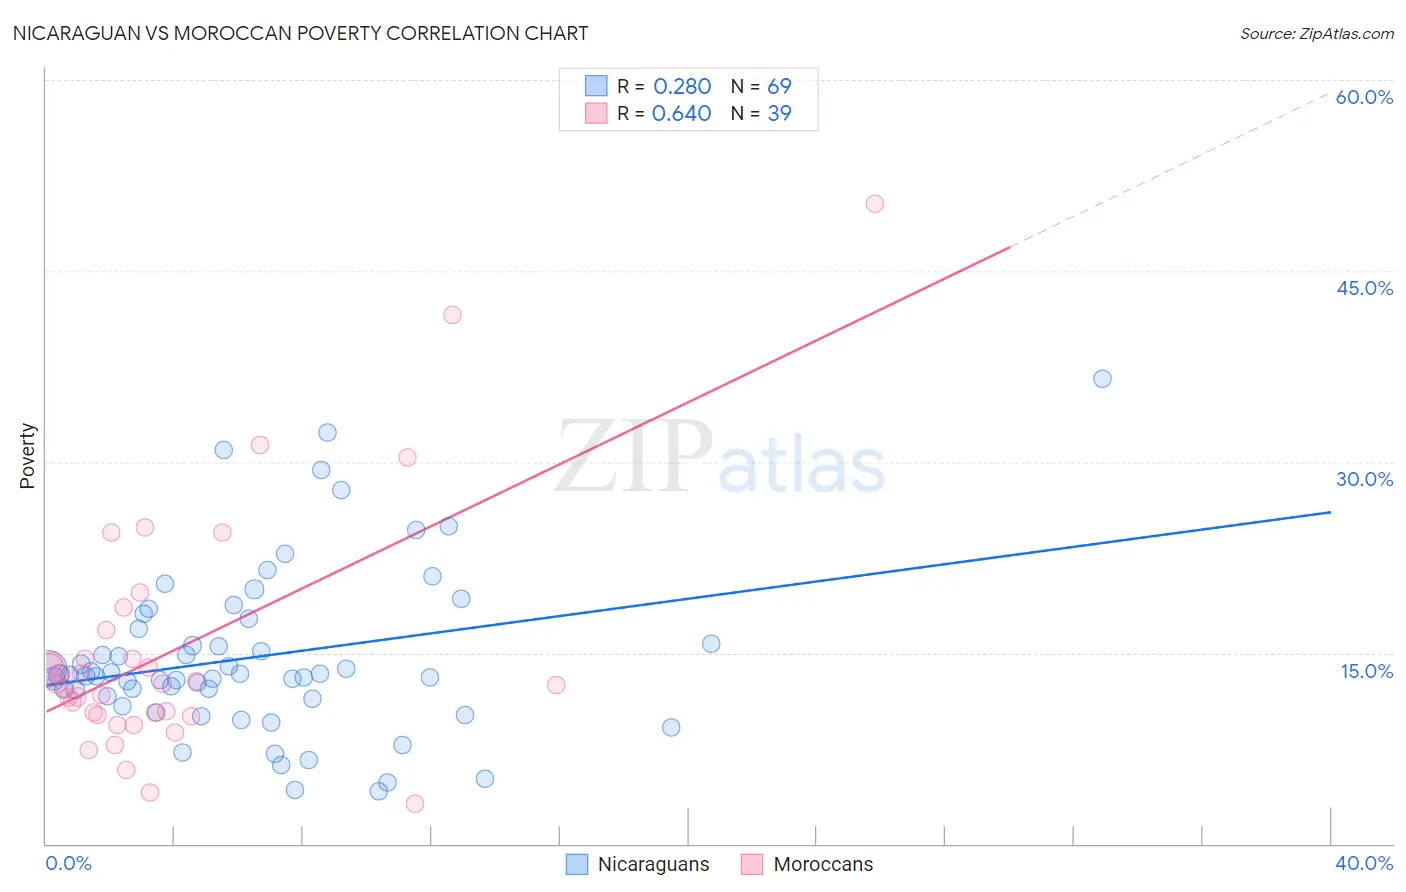 Nicaraguan vs Moroccan Poverty